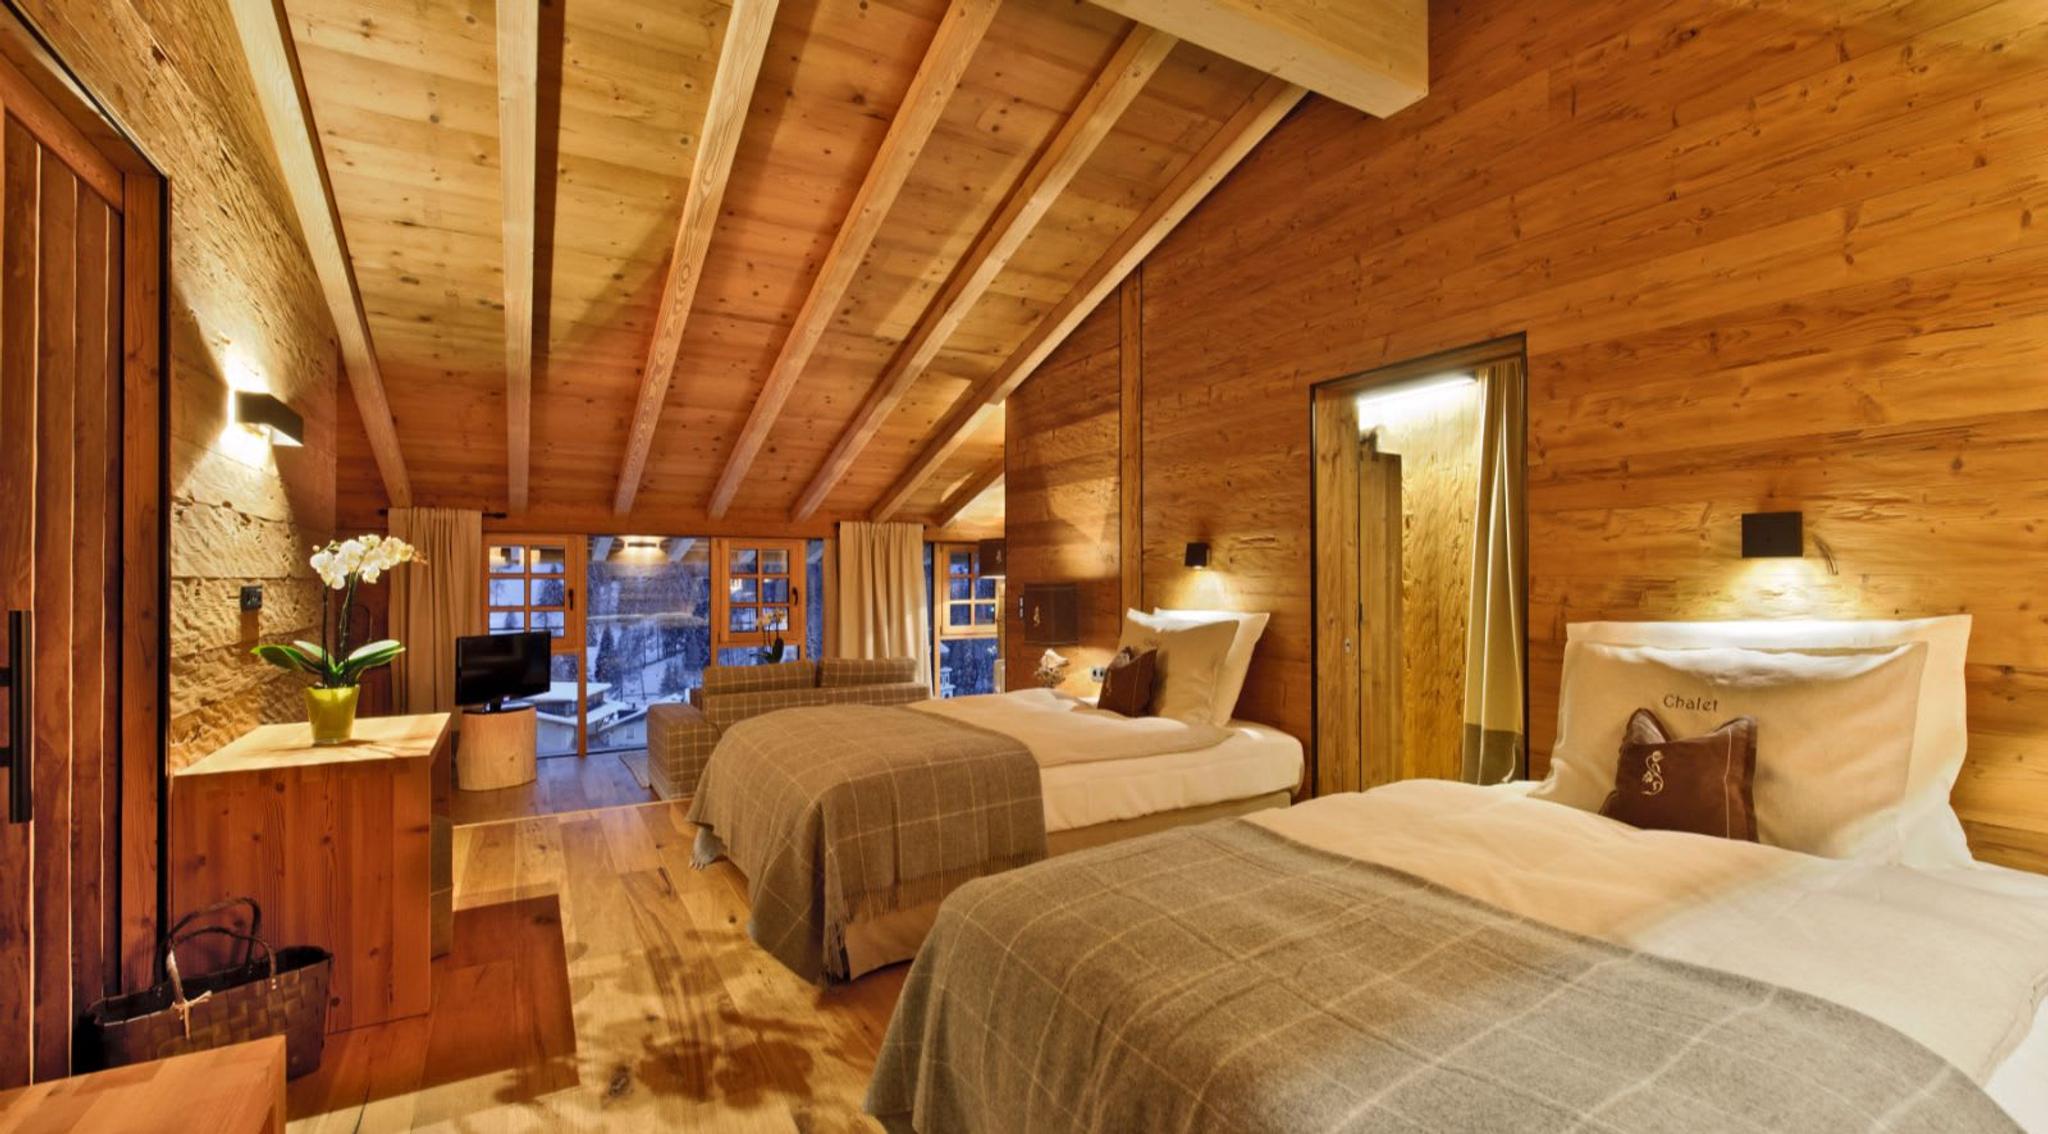 Zona notte dello Chalet Gran Cil, uno dei cinque meravigliosi Chalet dell'Hotel Fanes, con interni in legno, coperte in cachemire e una vista panoramica mozzafiato sul villaggio e sulle piste.